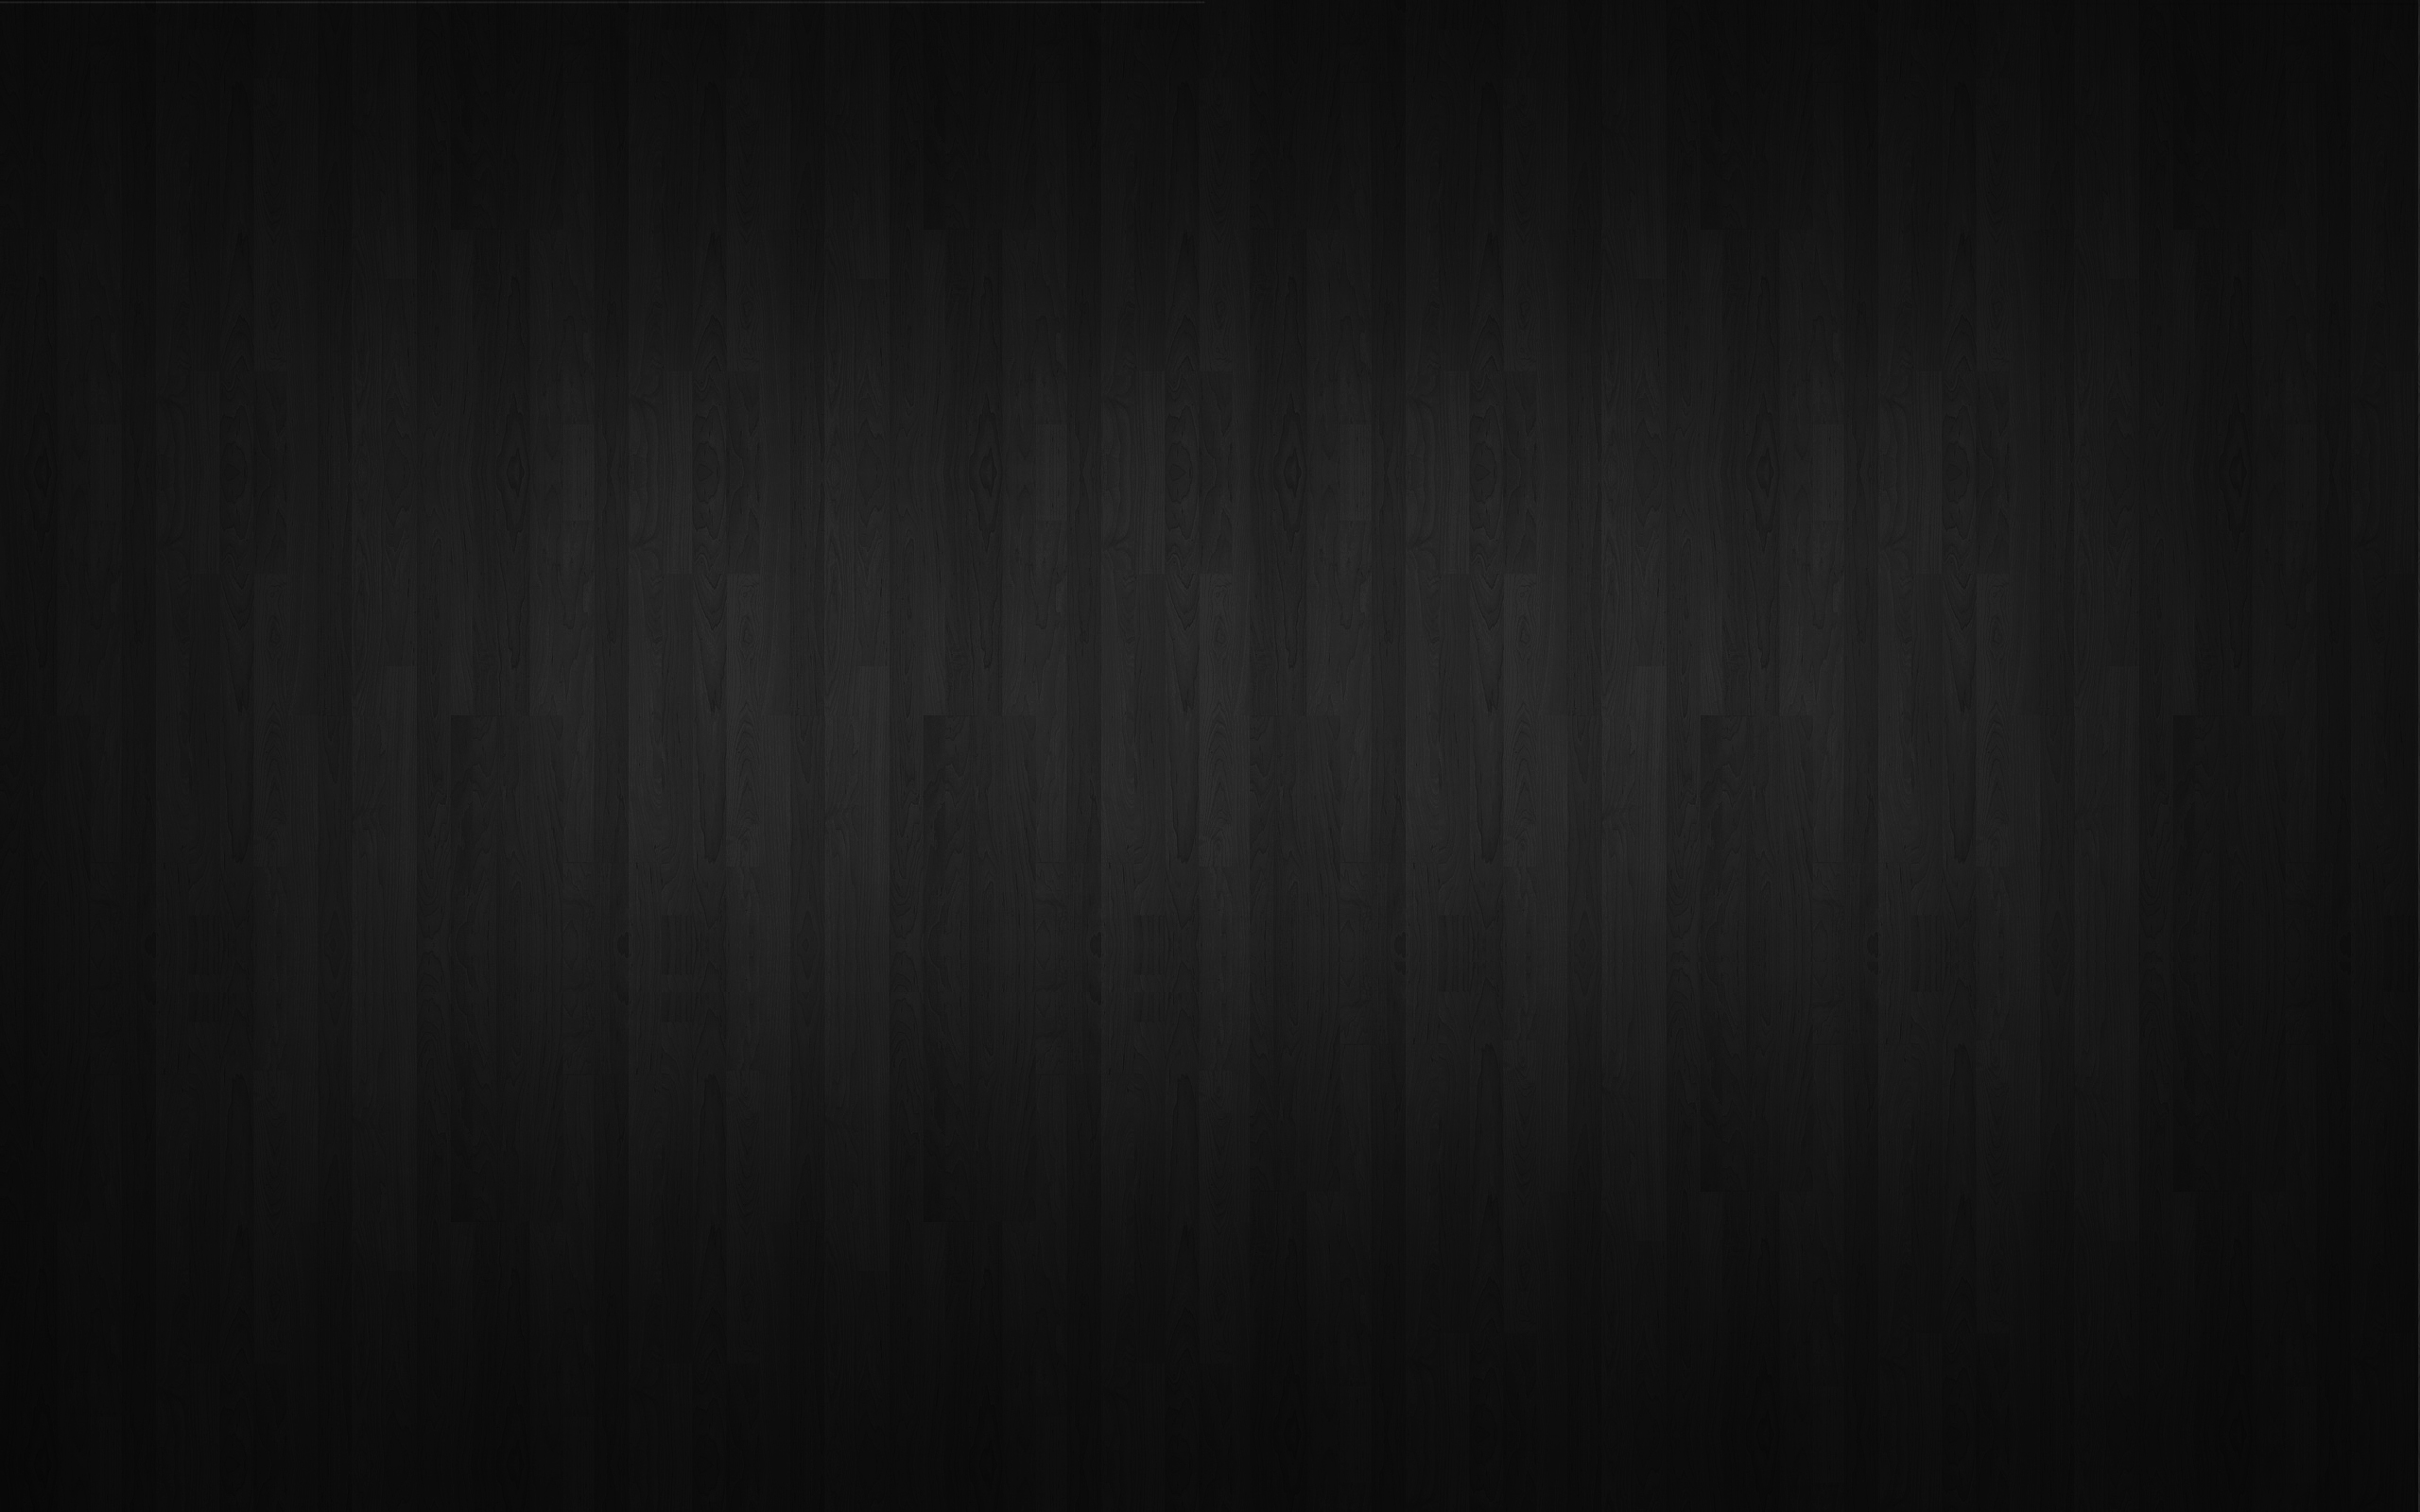 Текстура черное дерево, скачать бесплатно, фото, black wood texture, background